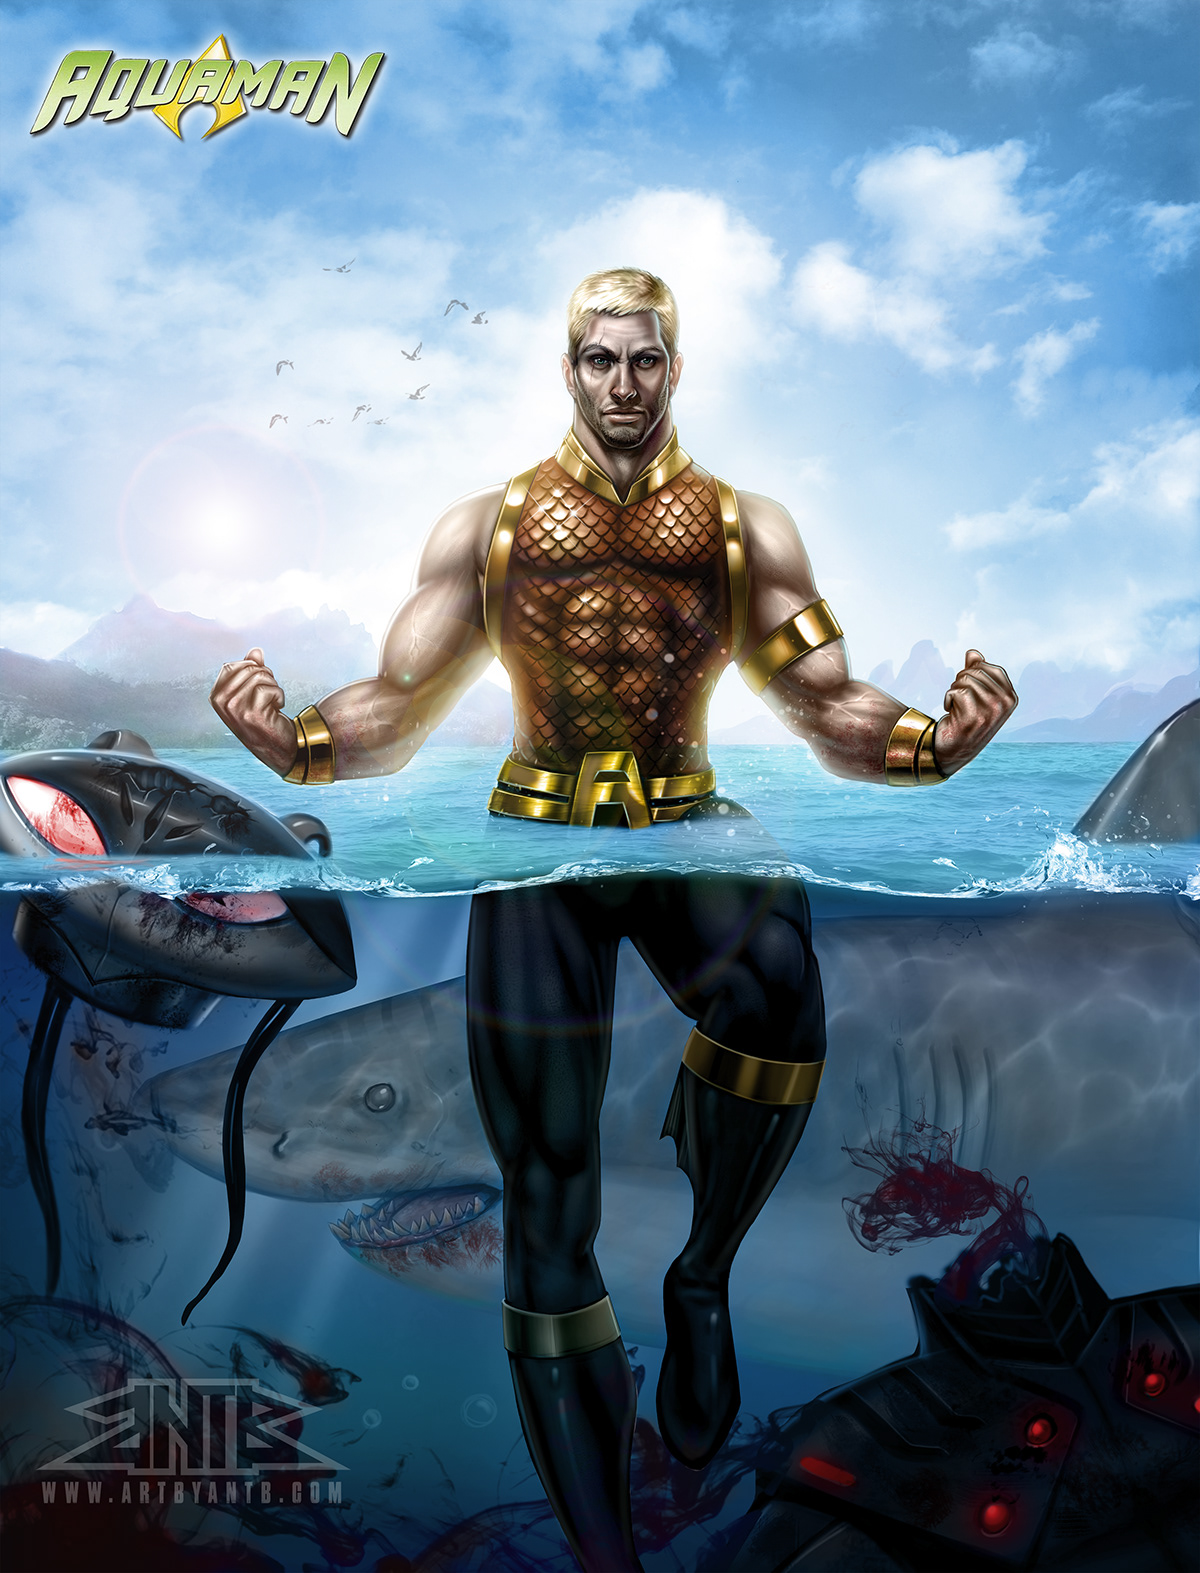 heroes dc comics Hellboy batman Aquaman Hulk wolverine fanart Fan Art fan art artbyantb